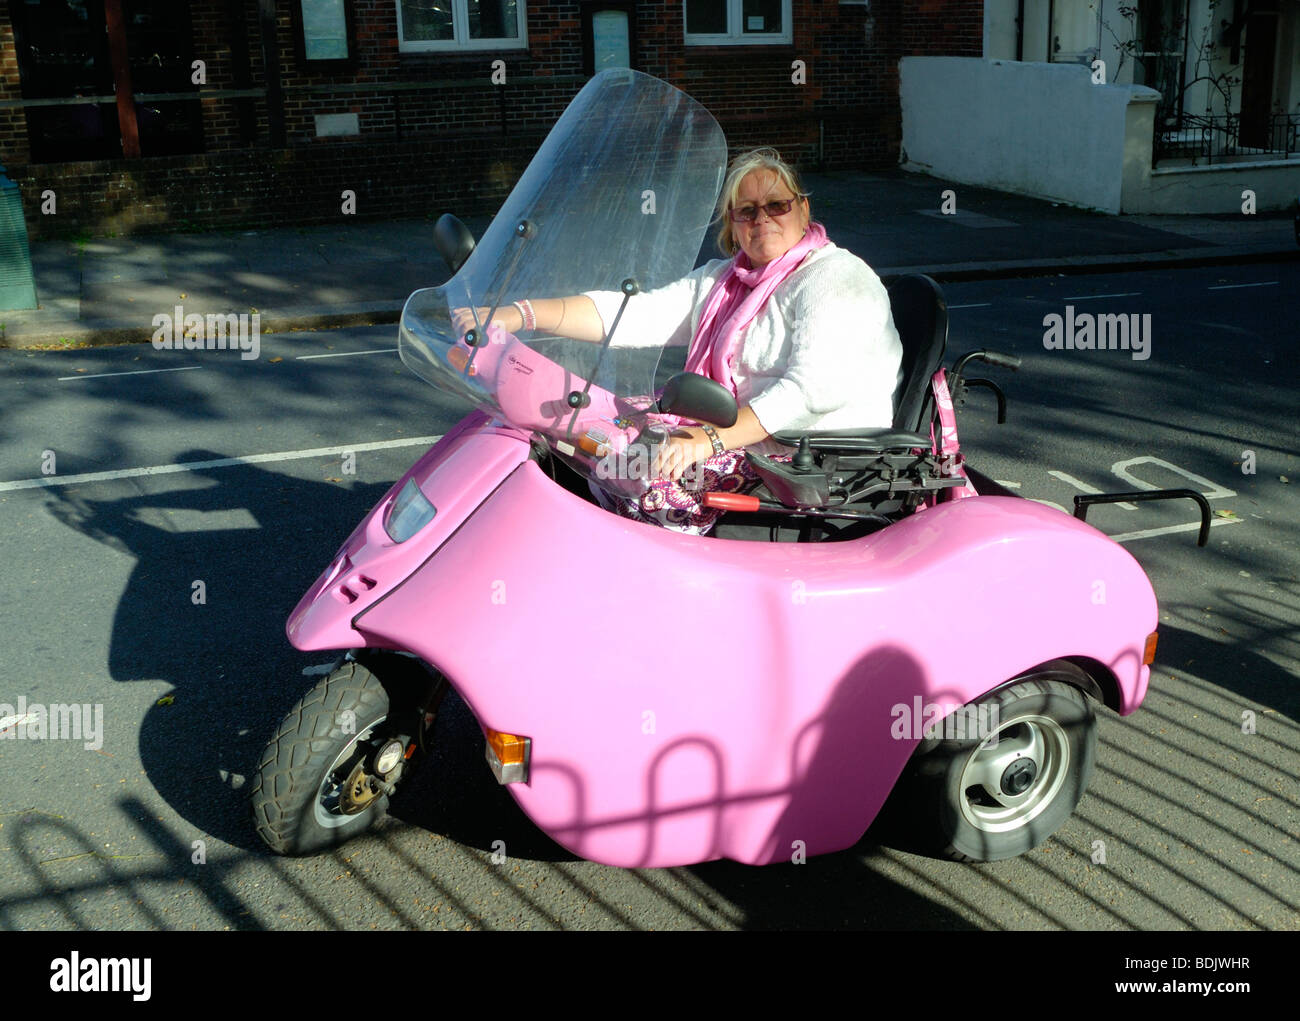 Une dame conduisant un scooter handicap rose Banque D'Images